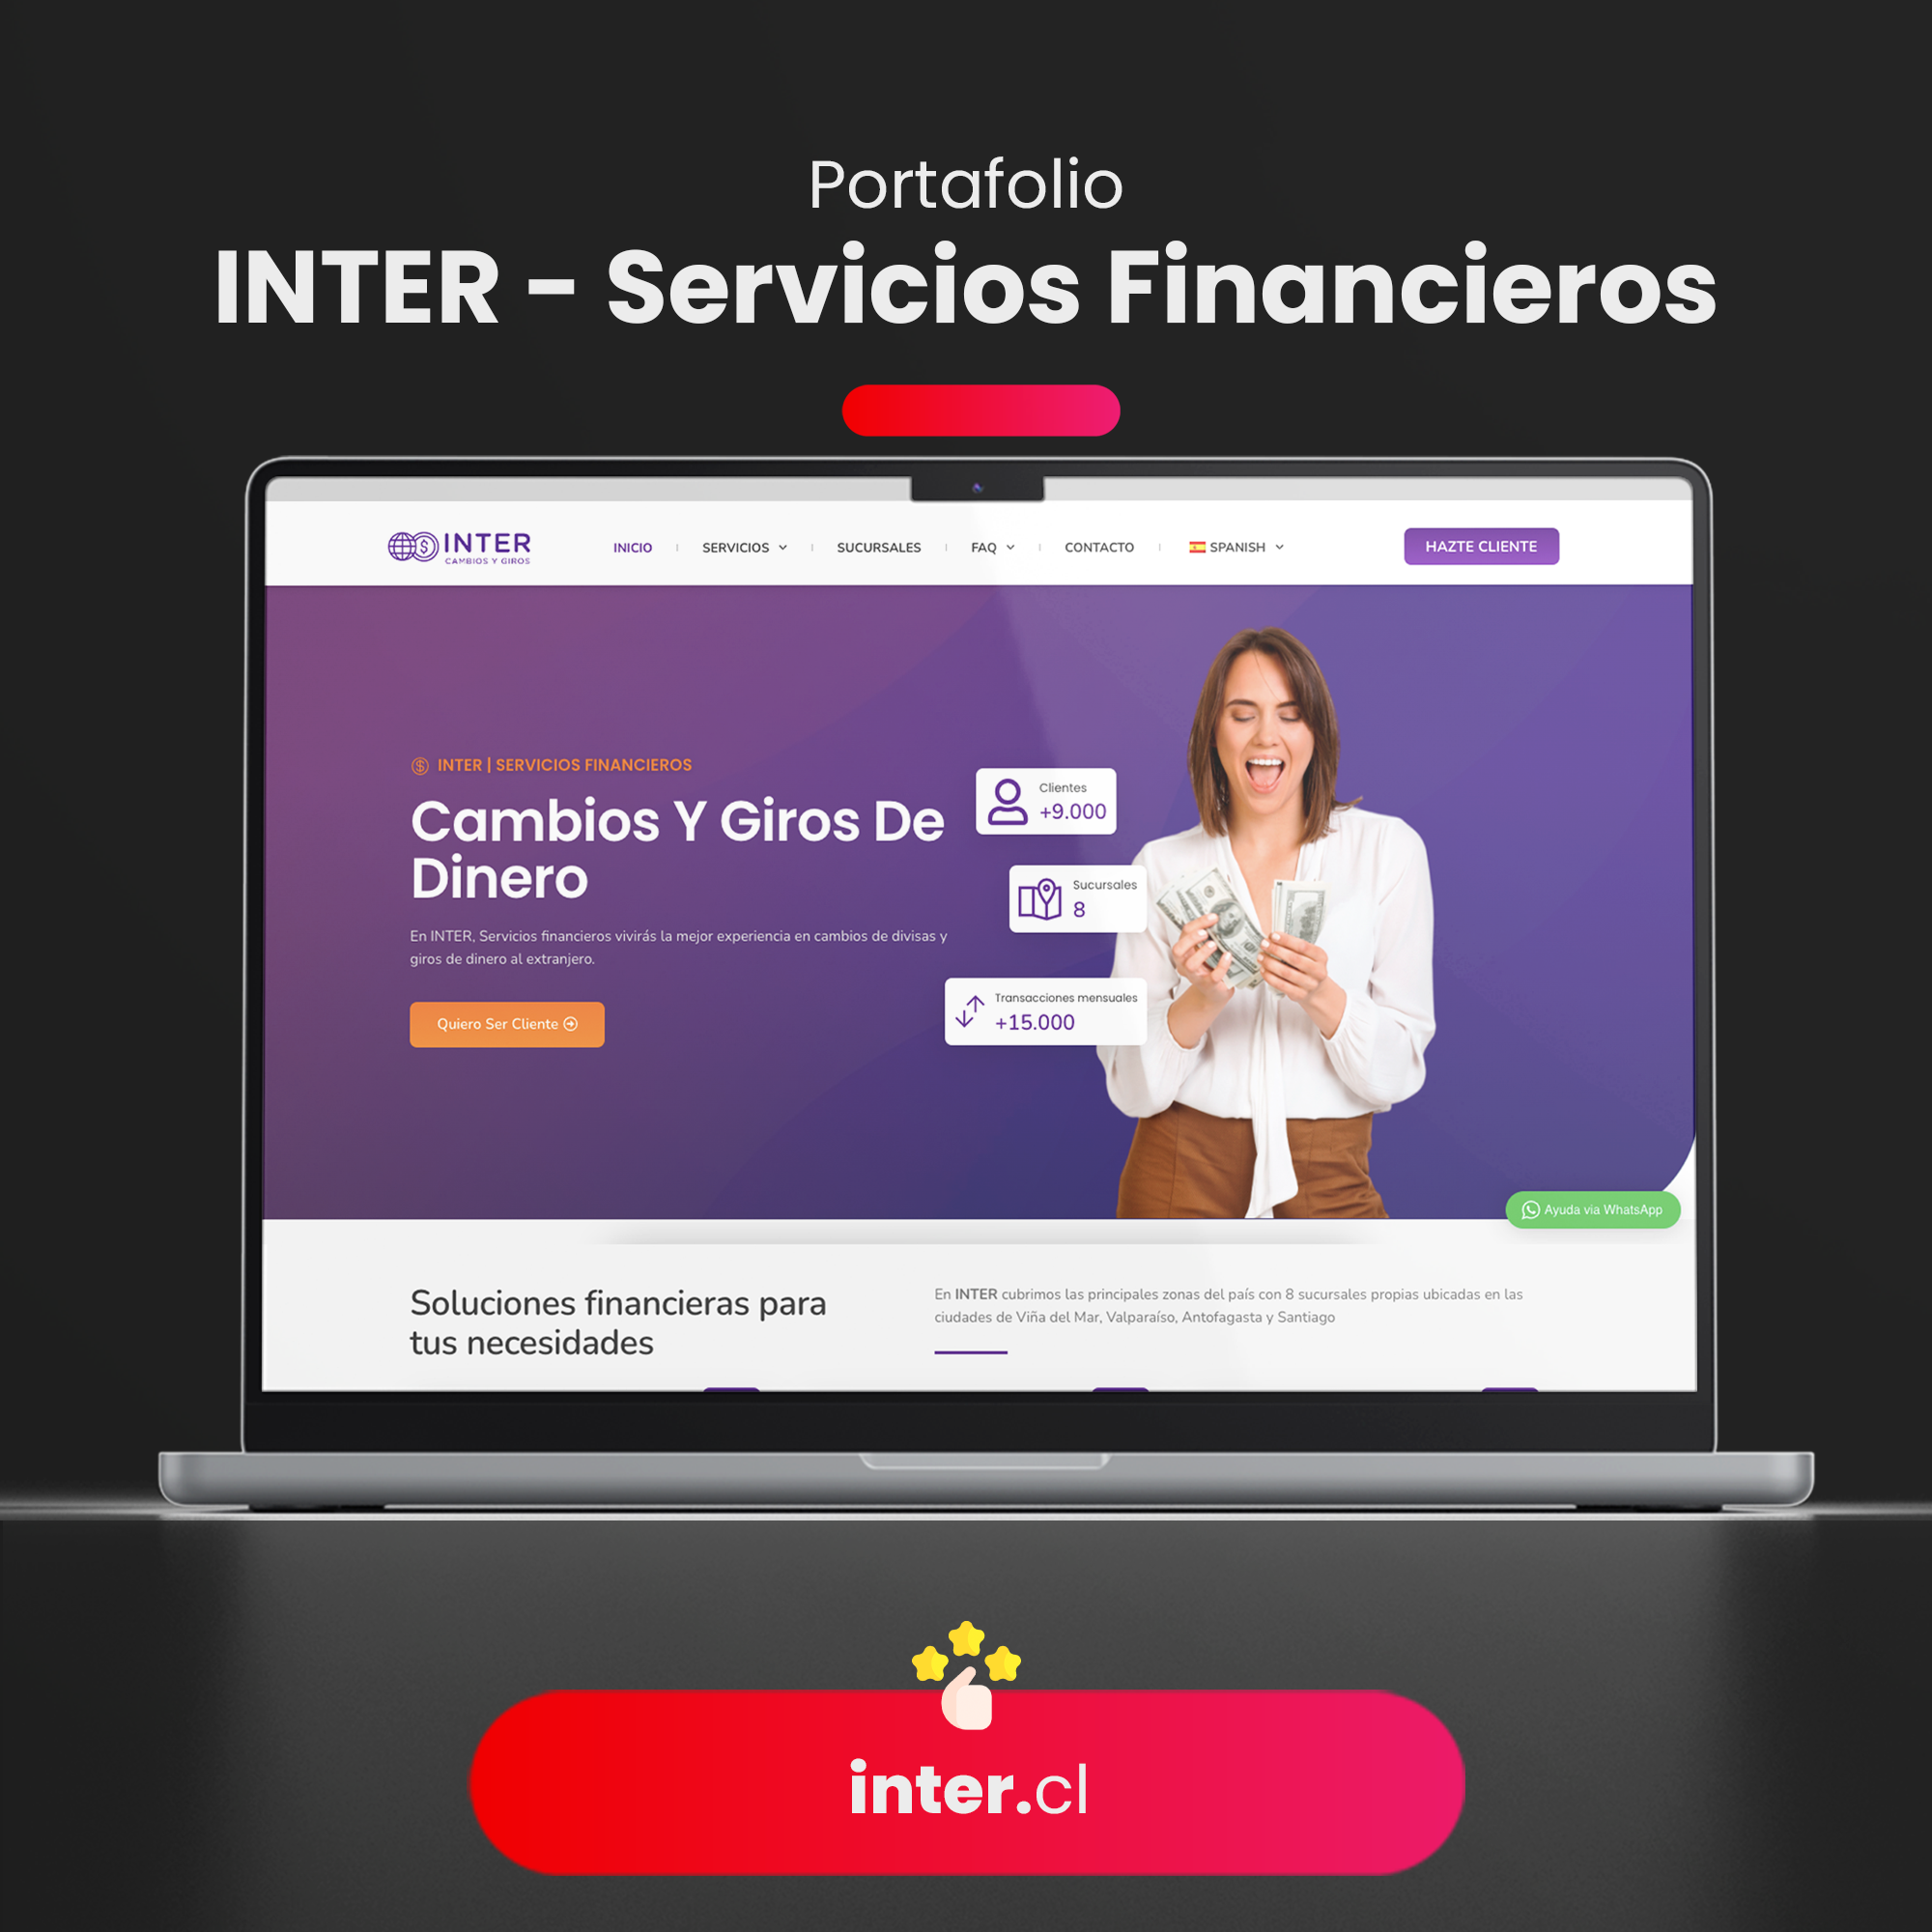 INTER Servicios Financieros